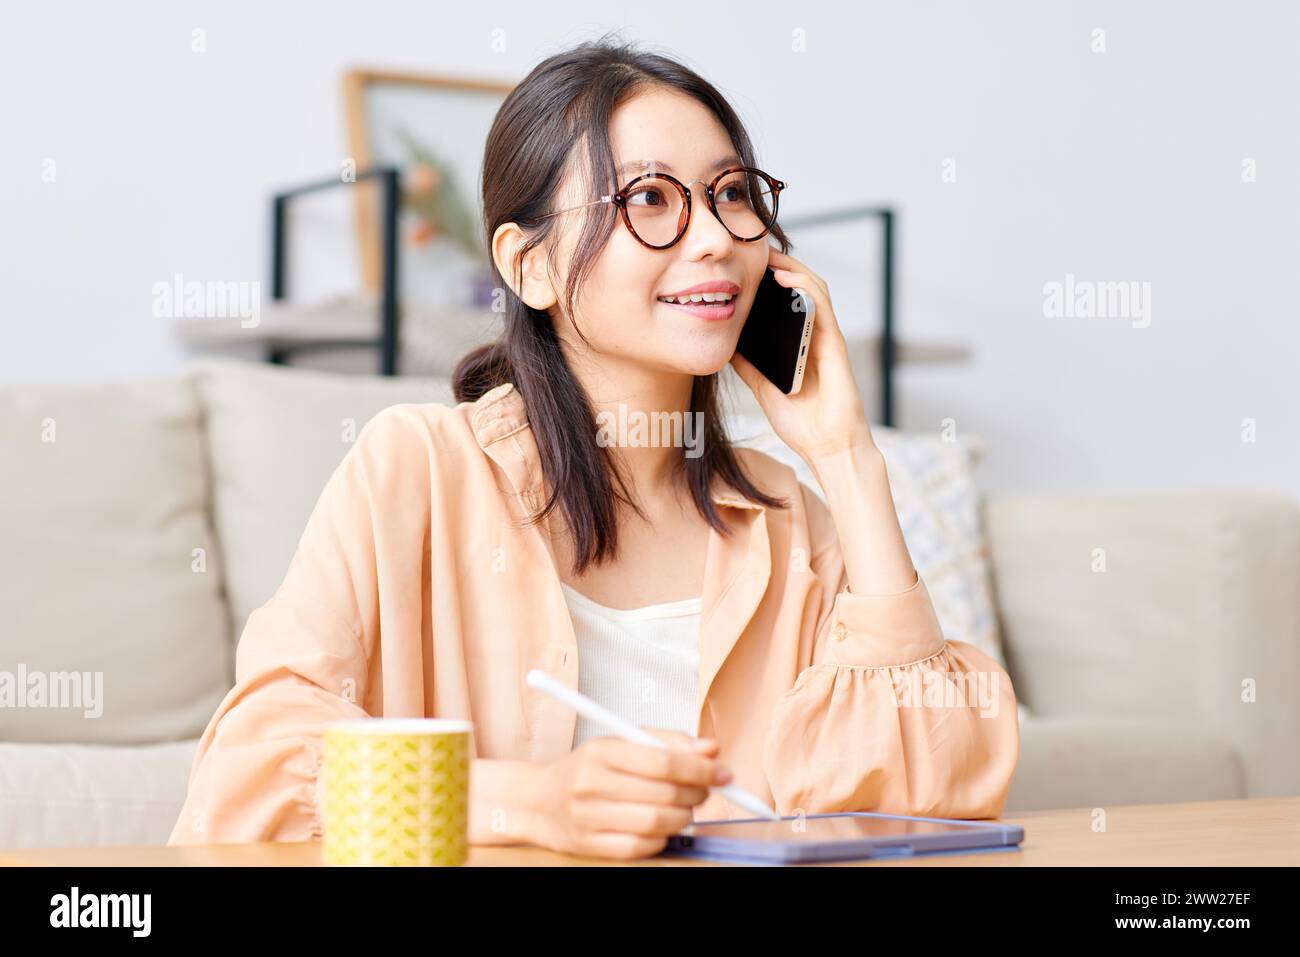 Femme asiatique avec des lunettes sur parler au téléphone Banque D'Images